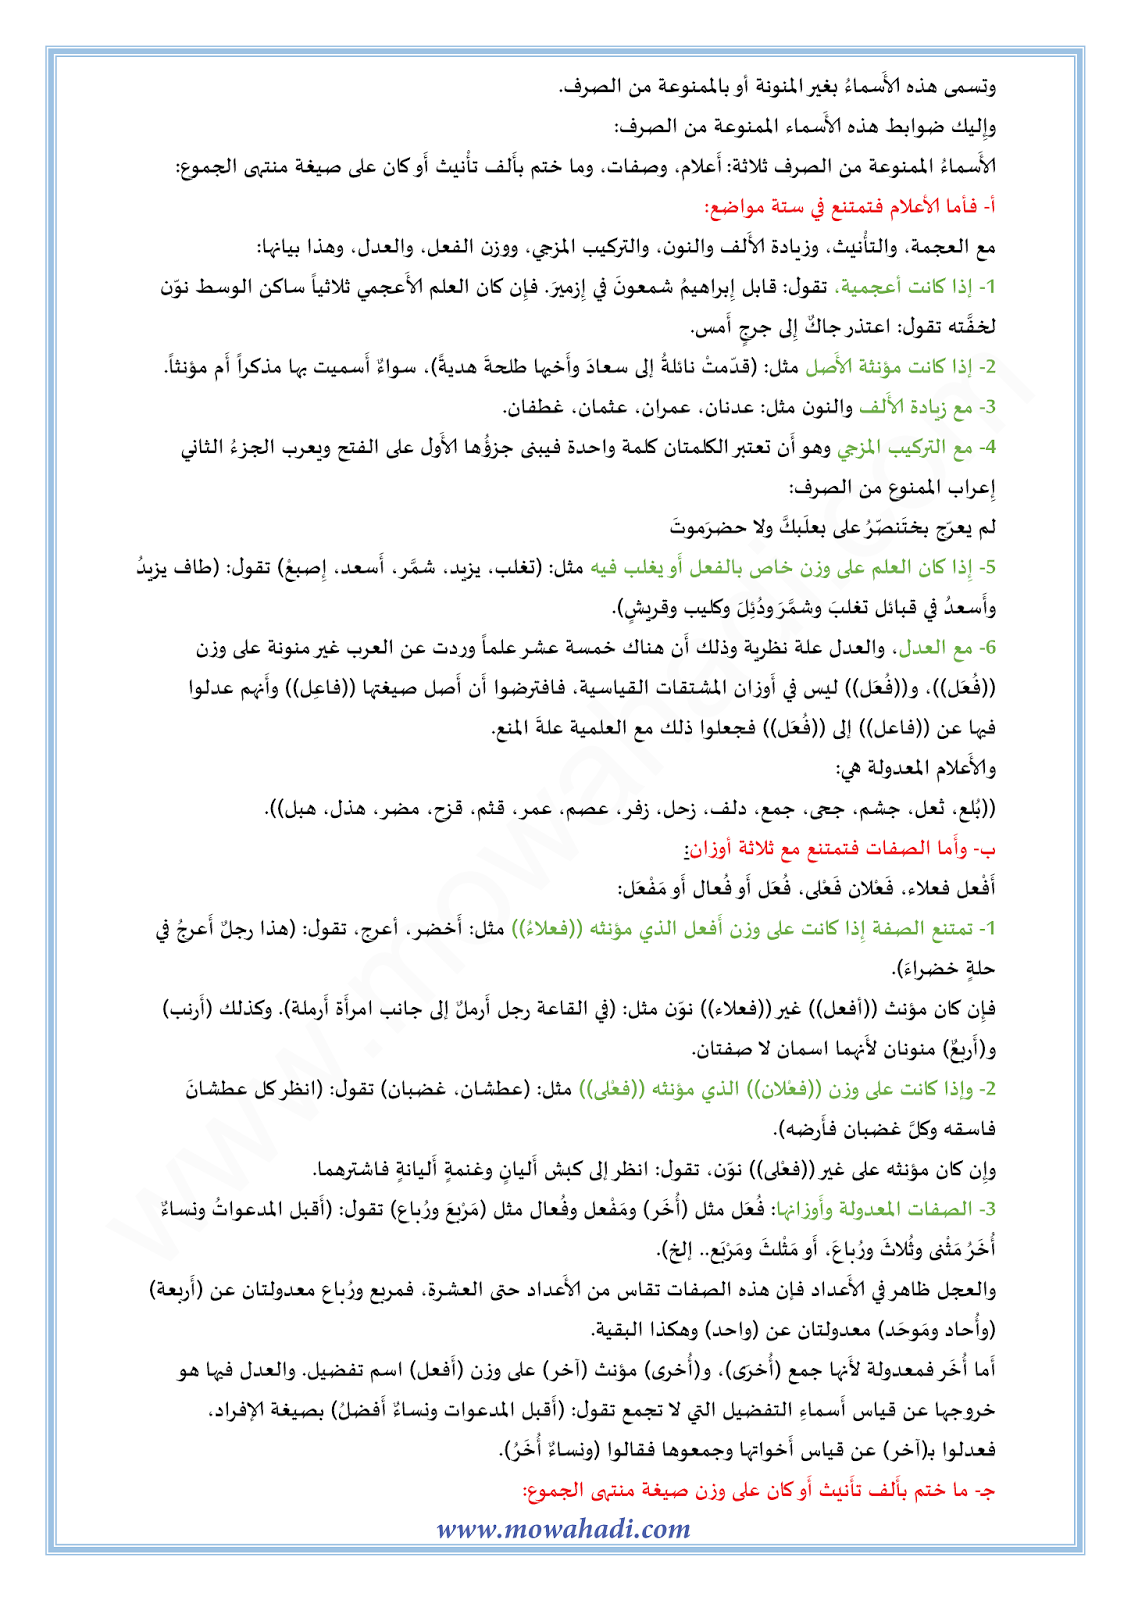 الدرس اللغوي الممنوع من الصرف للسنة الثالثة اعدادي في مادة اللغة العربية 7-cours-dars-loghawi3_003